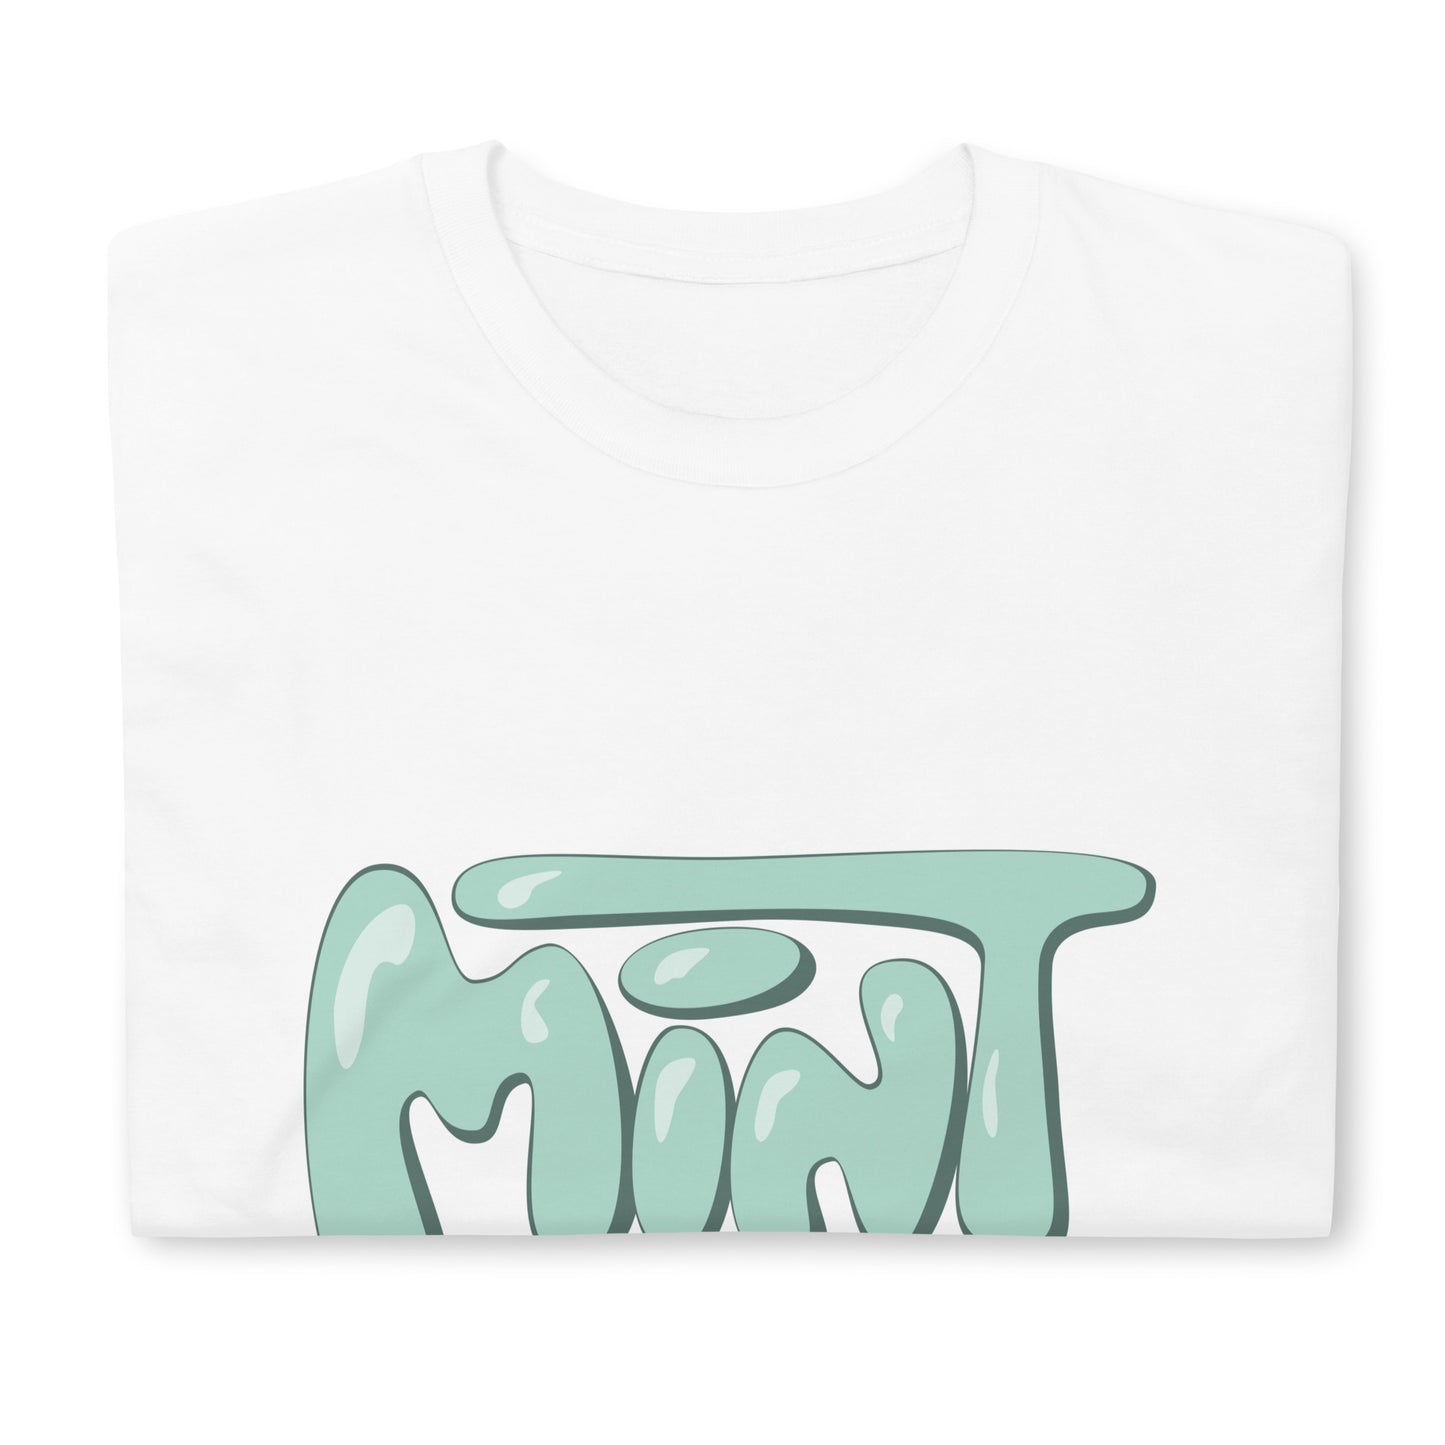 Mint T-shirt